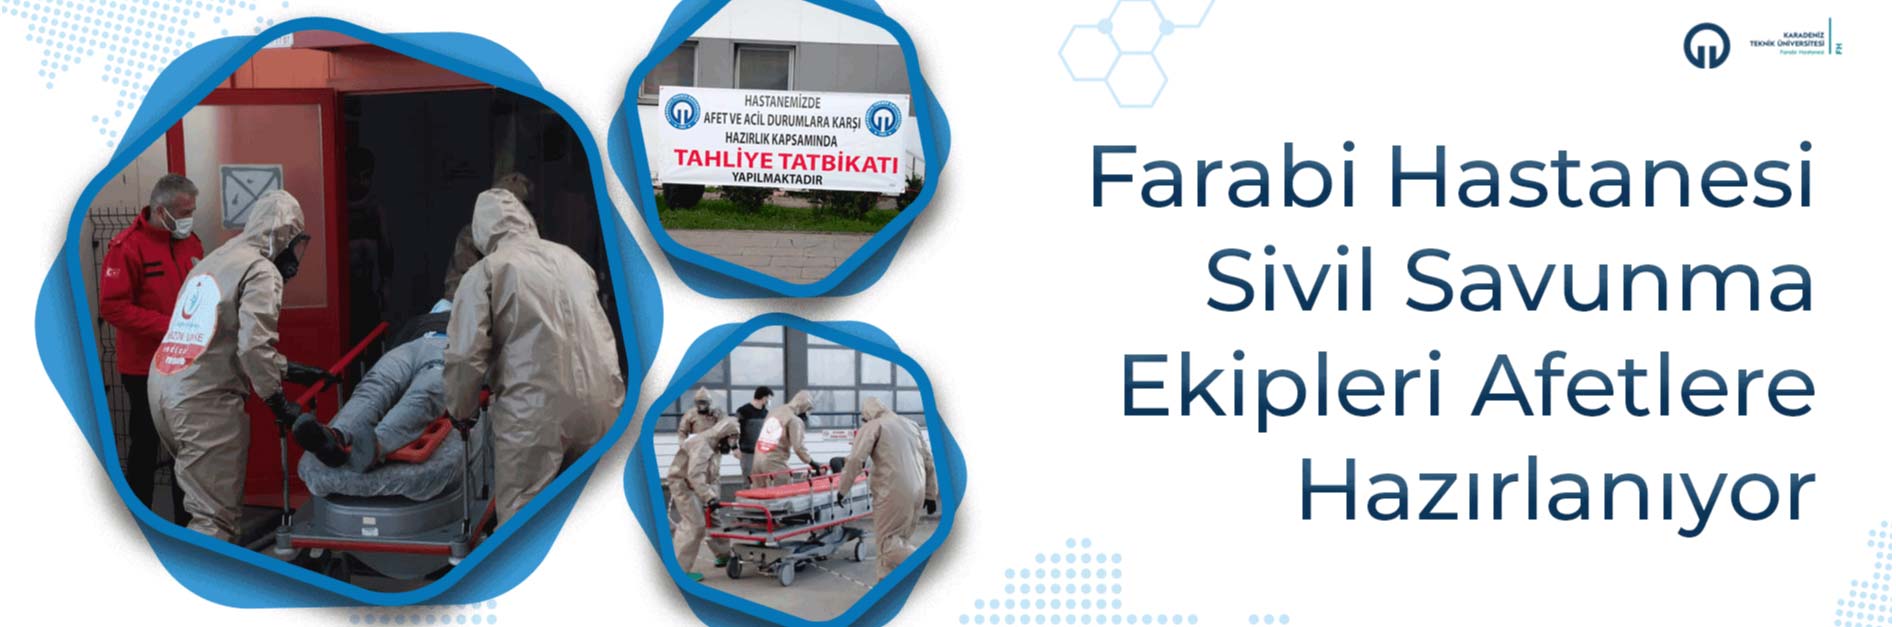 Farabi Hastanesi Sivil Savunma Ekipleri Afetlere Hazýrlanýyor